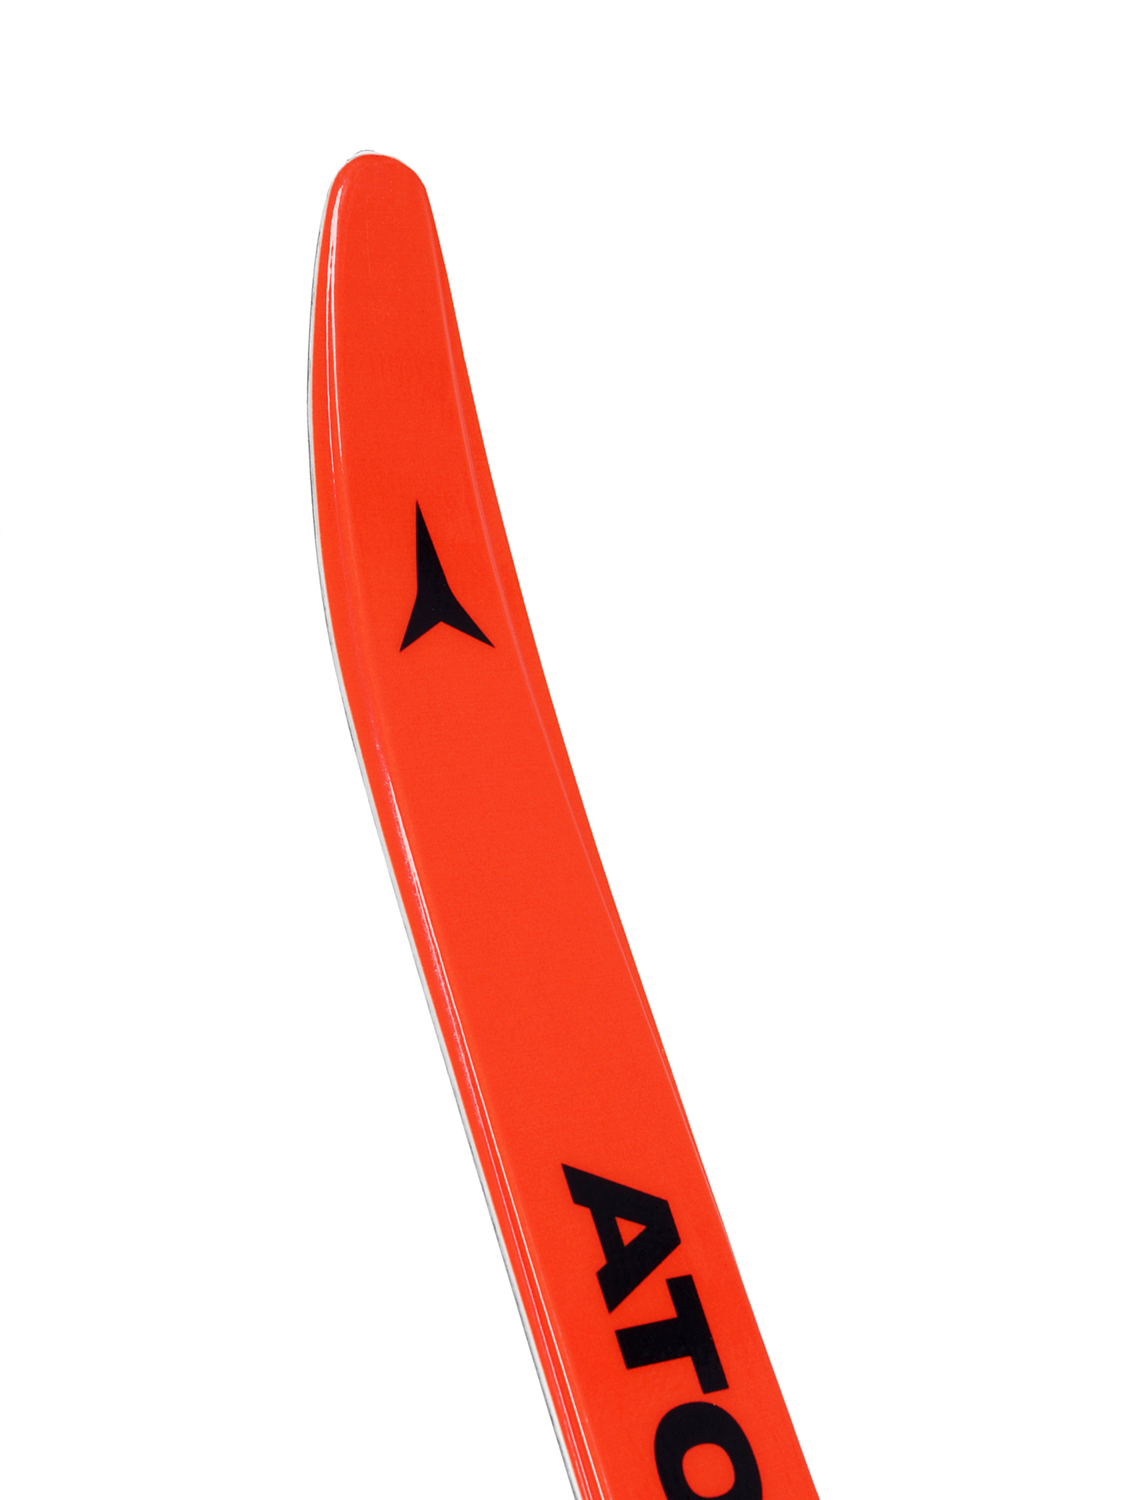 Беговые лыжи ATOMIC 2021-22 Pro Cs1 Light Grey/Grey/Orange